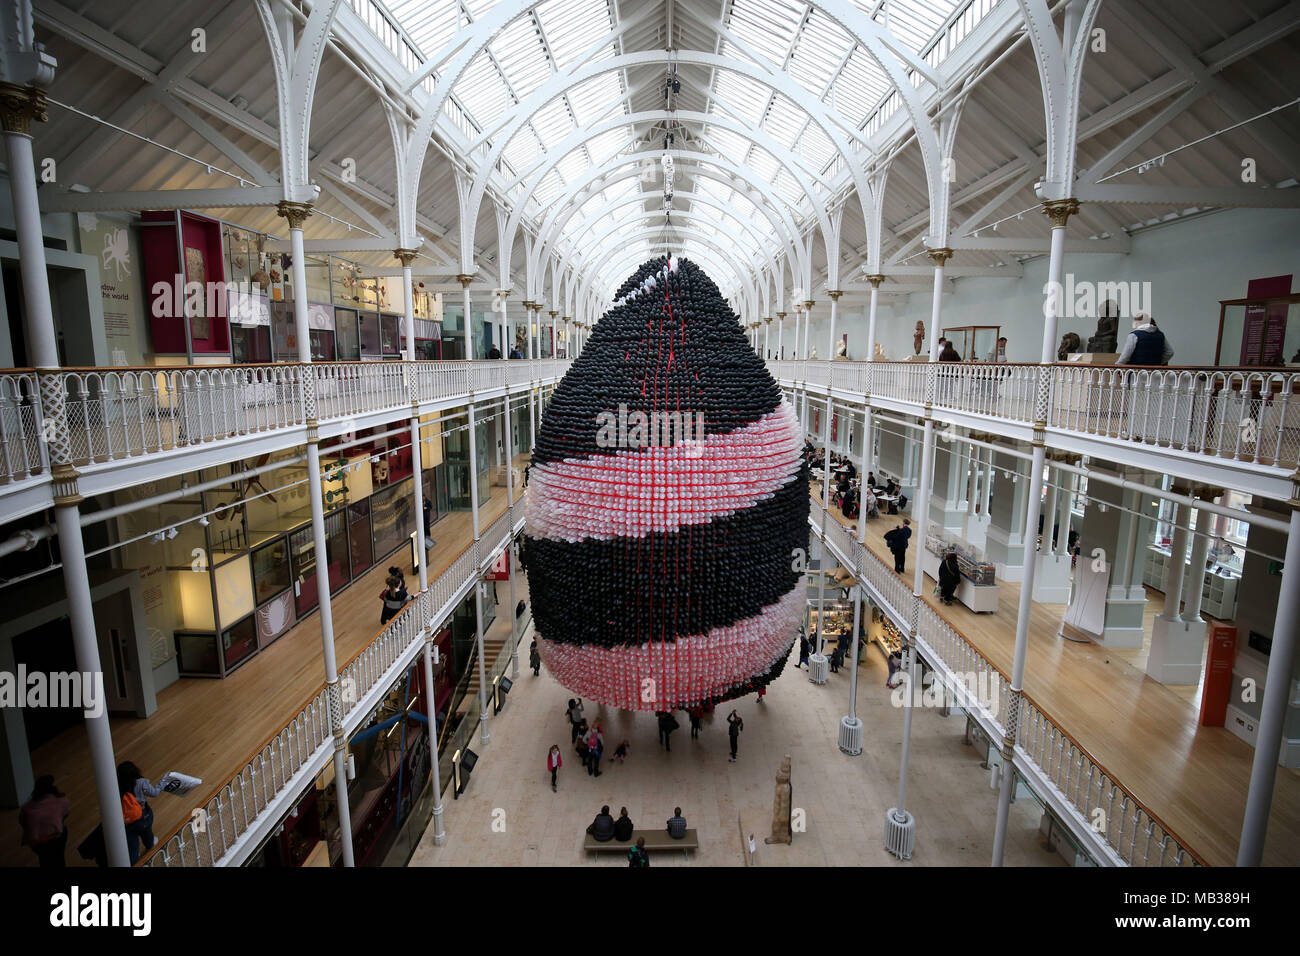 Questa scultura palloncino chiamato orizzonte di evento è stato creato dall'artista americano Jason Hackenwerth Internazionale per il Festival della Scienza e pende dalla parte superiore del National Museum of Scotland's Grand Gallery di Edimburgo, in Scozia. Foto Stock